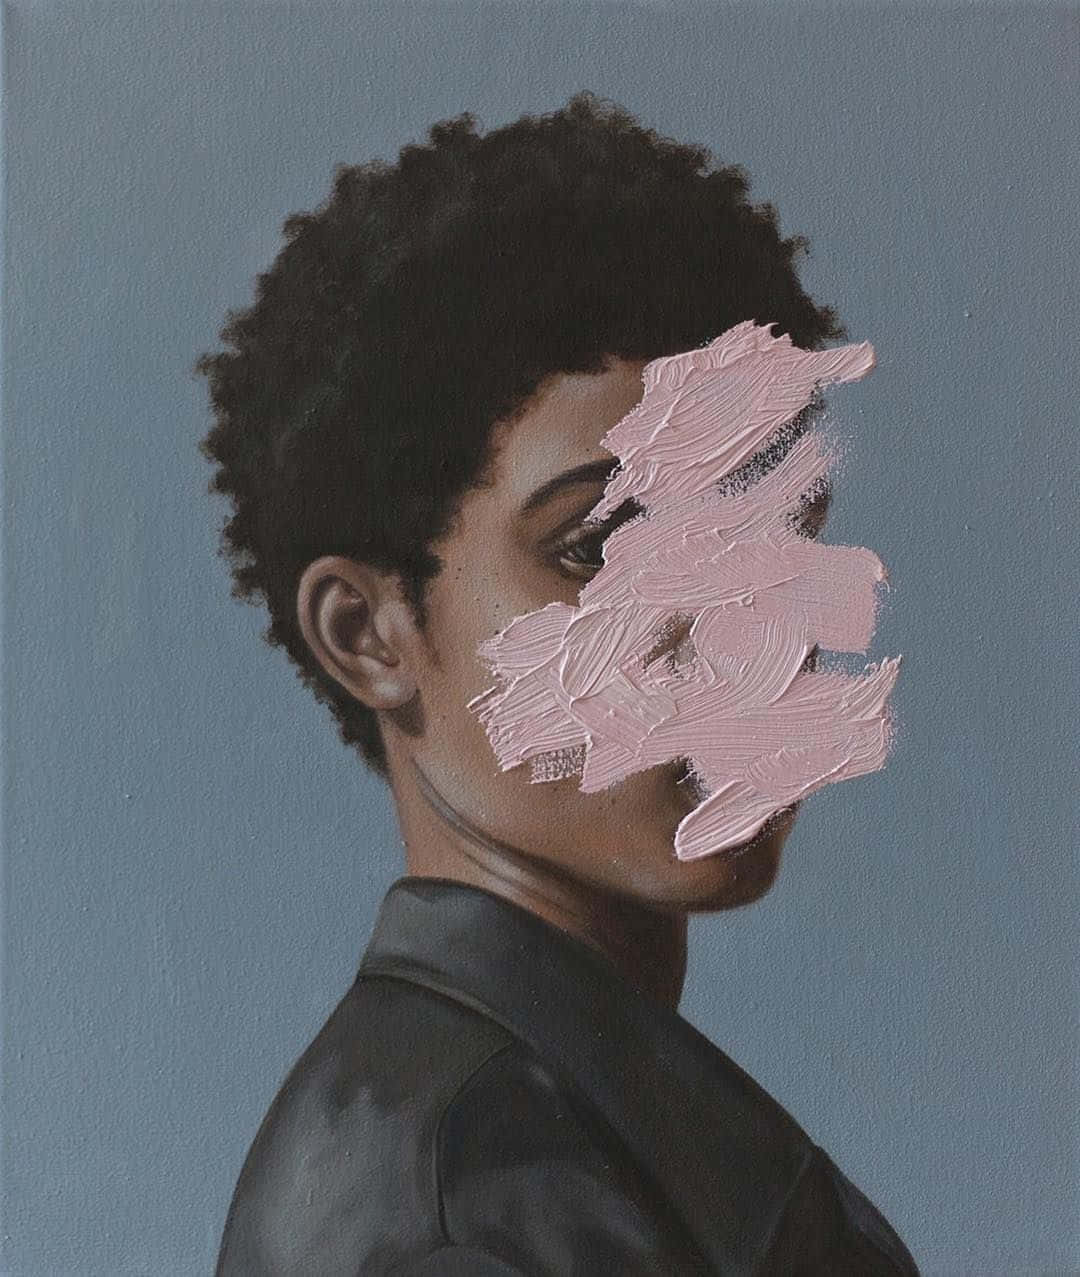 Unapintura De Un Hombre Negro Con Pintura Rosa En Su Rostro